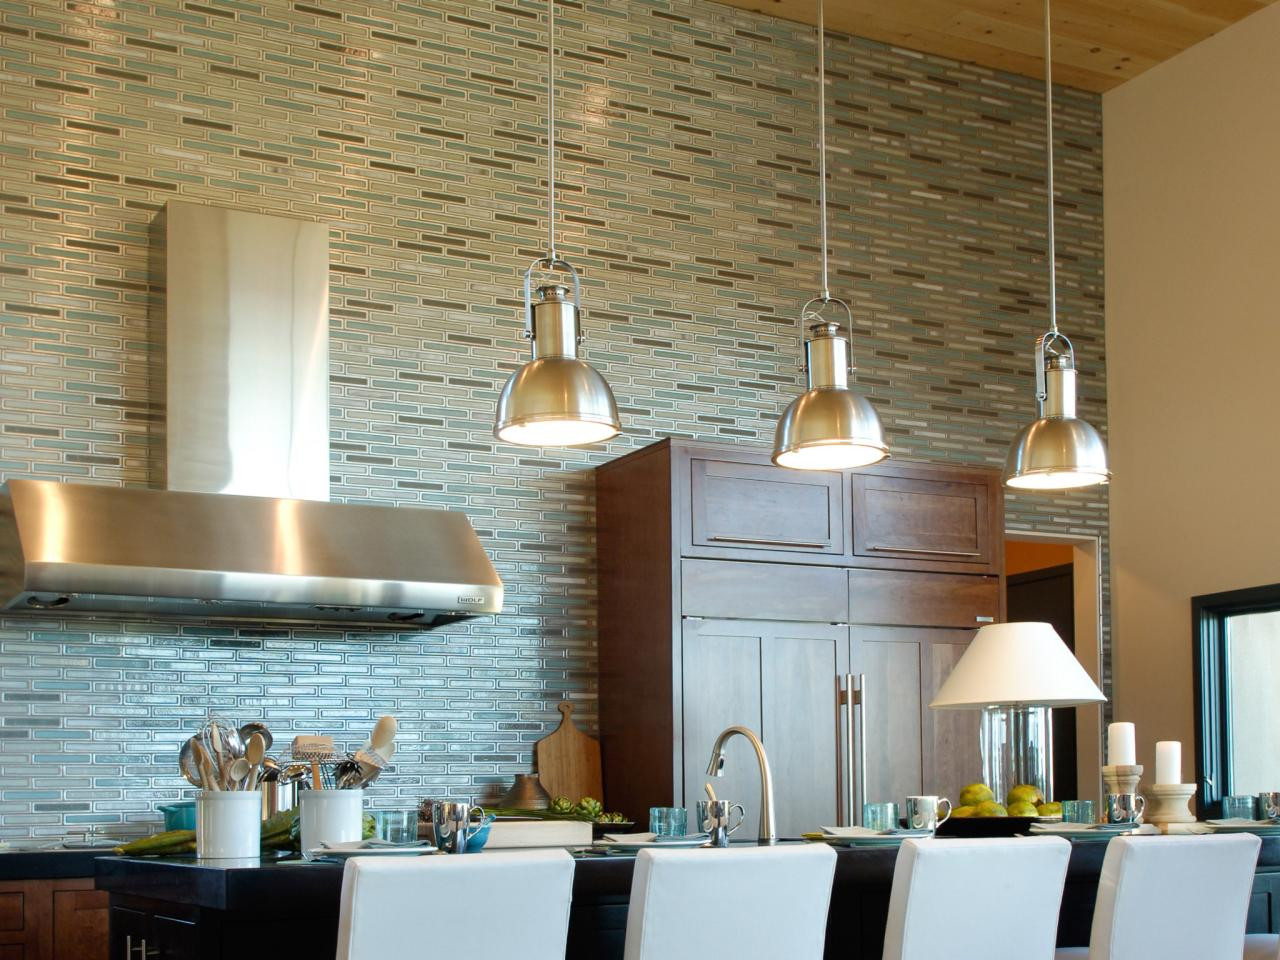 Kitchen Tile Back Splash Designs
 75 Kitchen Backsplash Ideas for 2020 Tile Glass Metal etc